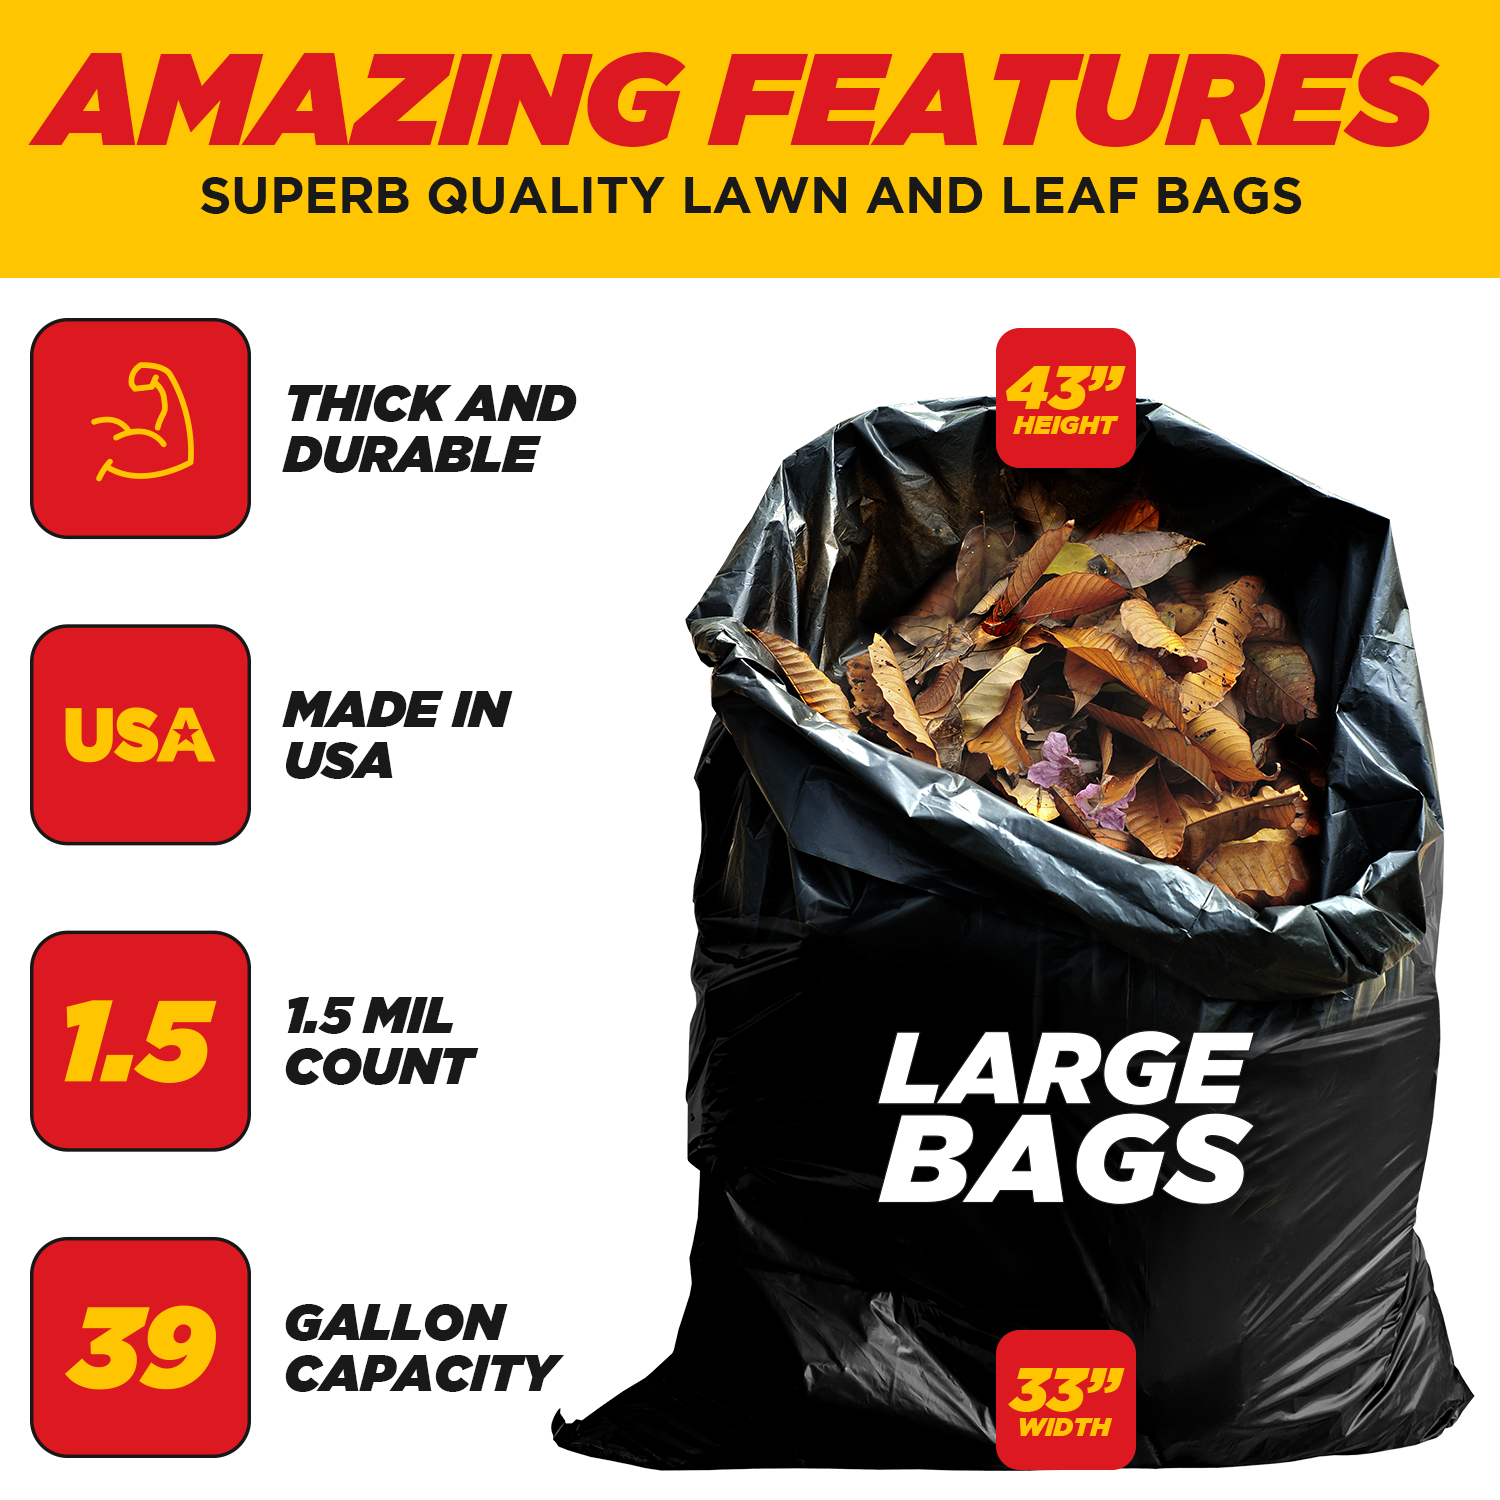 Dyno Products Online 42-Gallon, 3 Mil Thick Heavy-Duty Black Trash Bag –  DynoProd